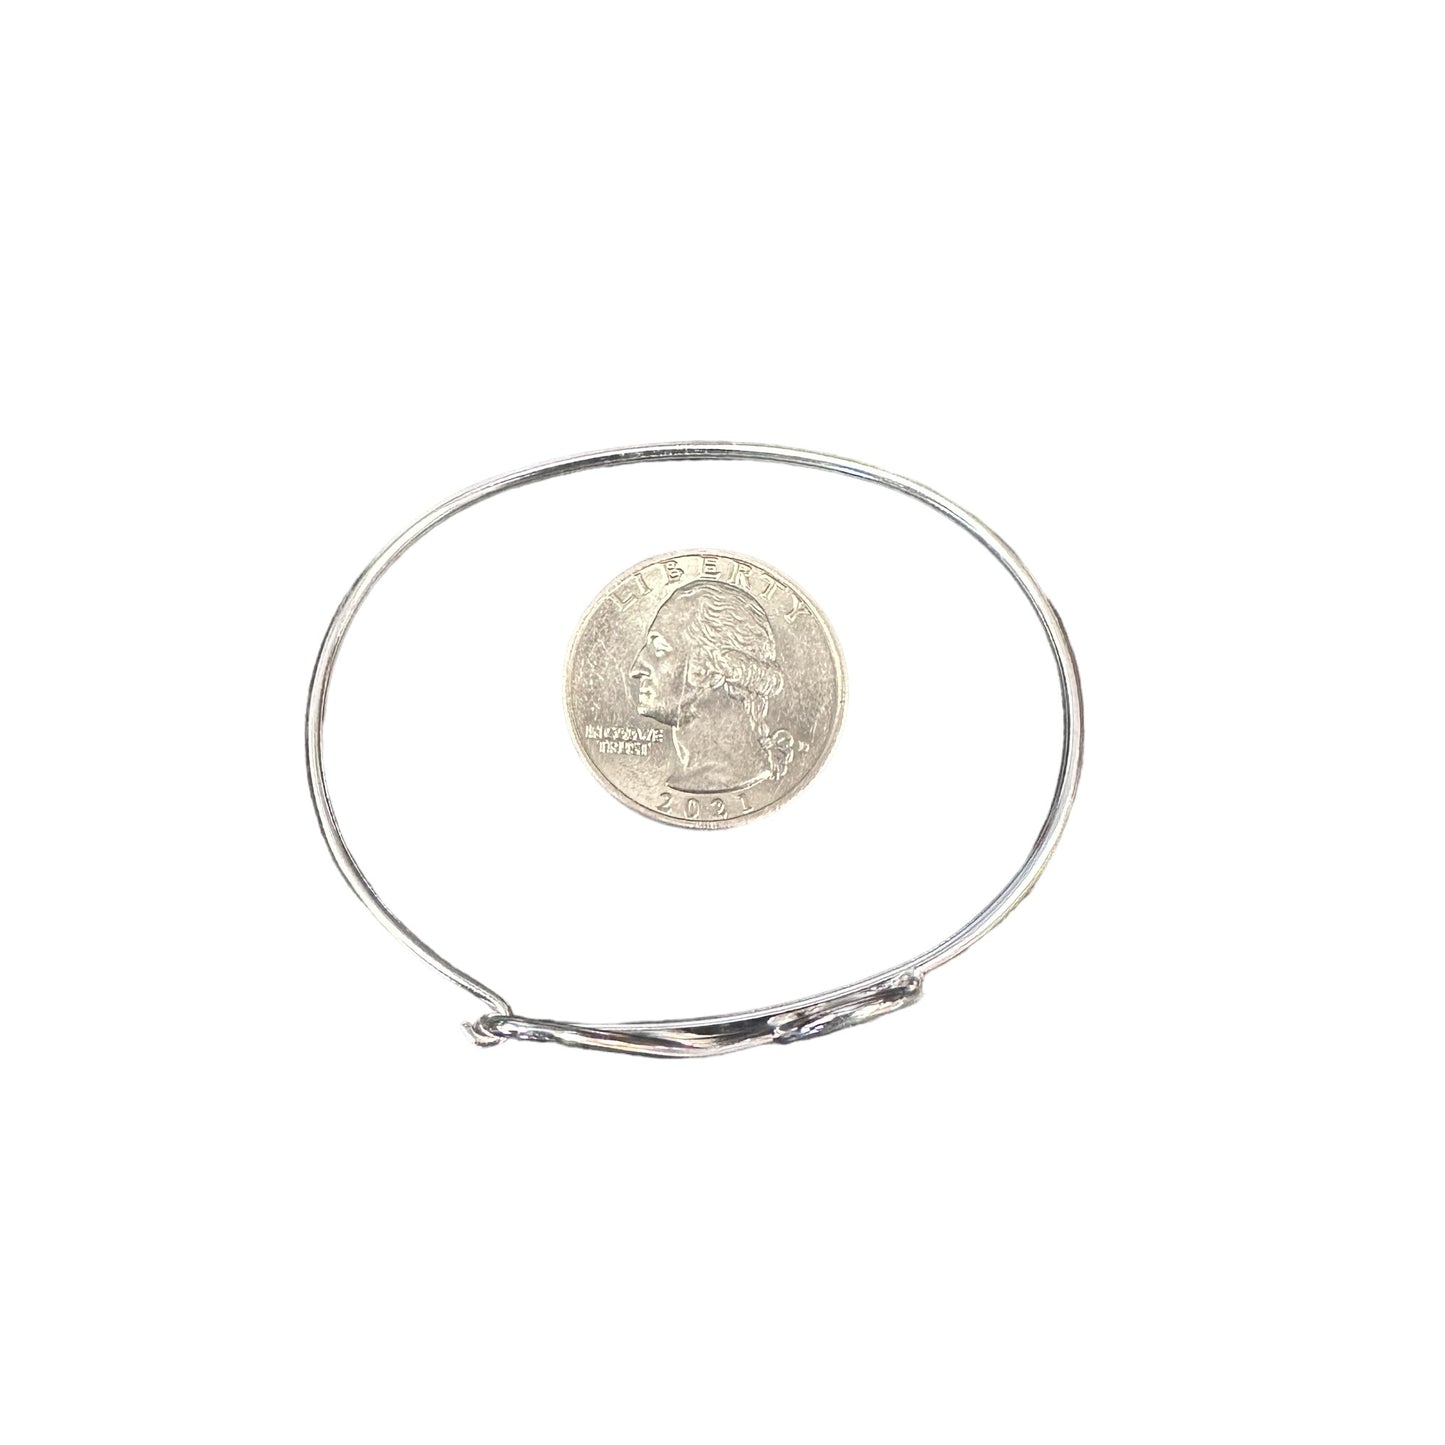 Swirl Latch Bangle Bracelet 9/16" Wide Sterling Silver